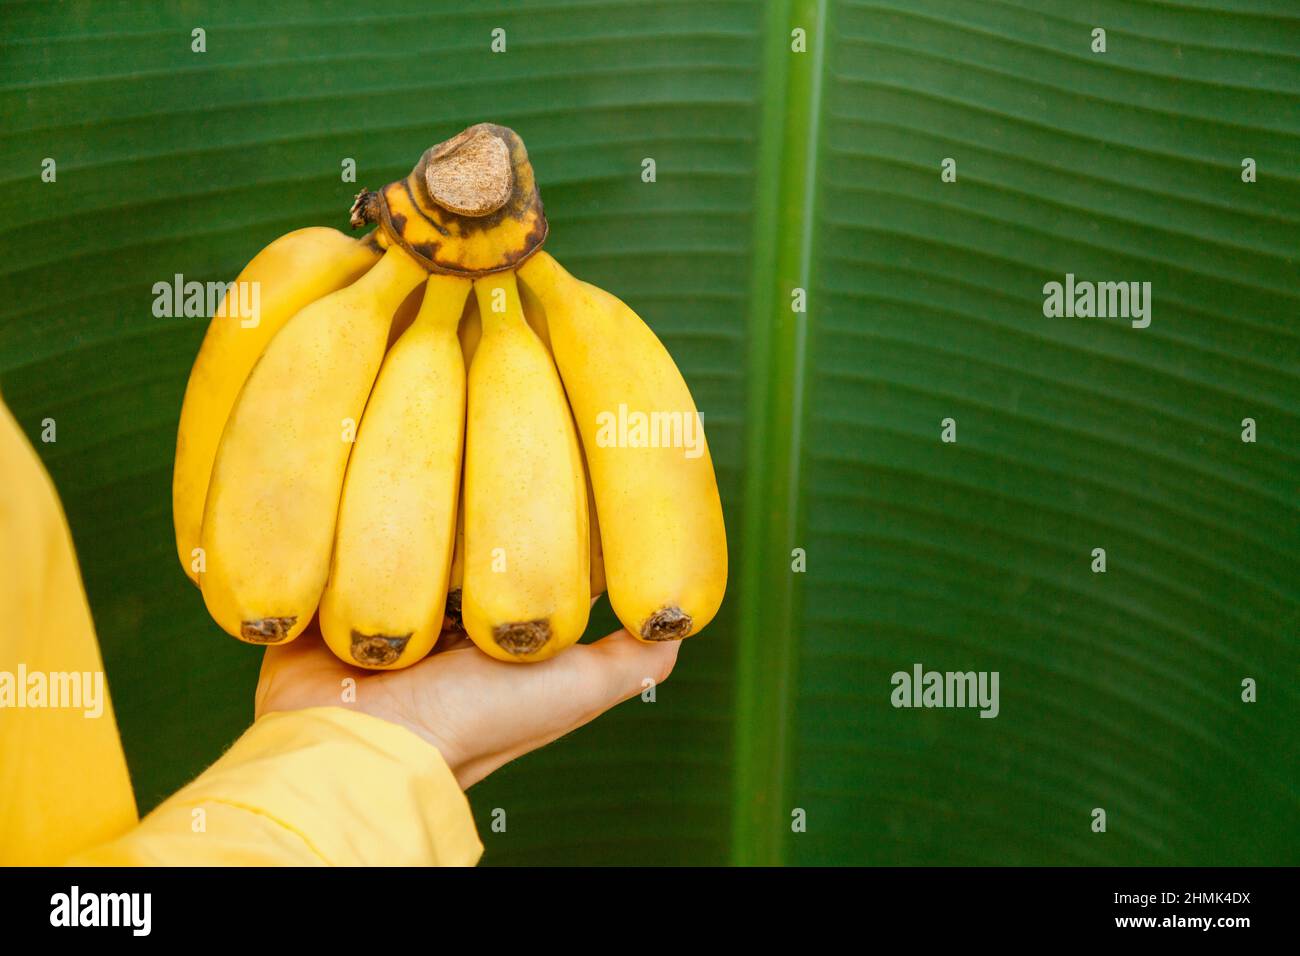 Femme agriculteur détenant des bananes fraîches brutes. Bananes jaunes fraîches biologiques dans les mains des femmes contre le fond de feuille de banane de la paume de banane dans tropical Banque D'Images